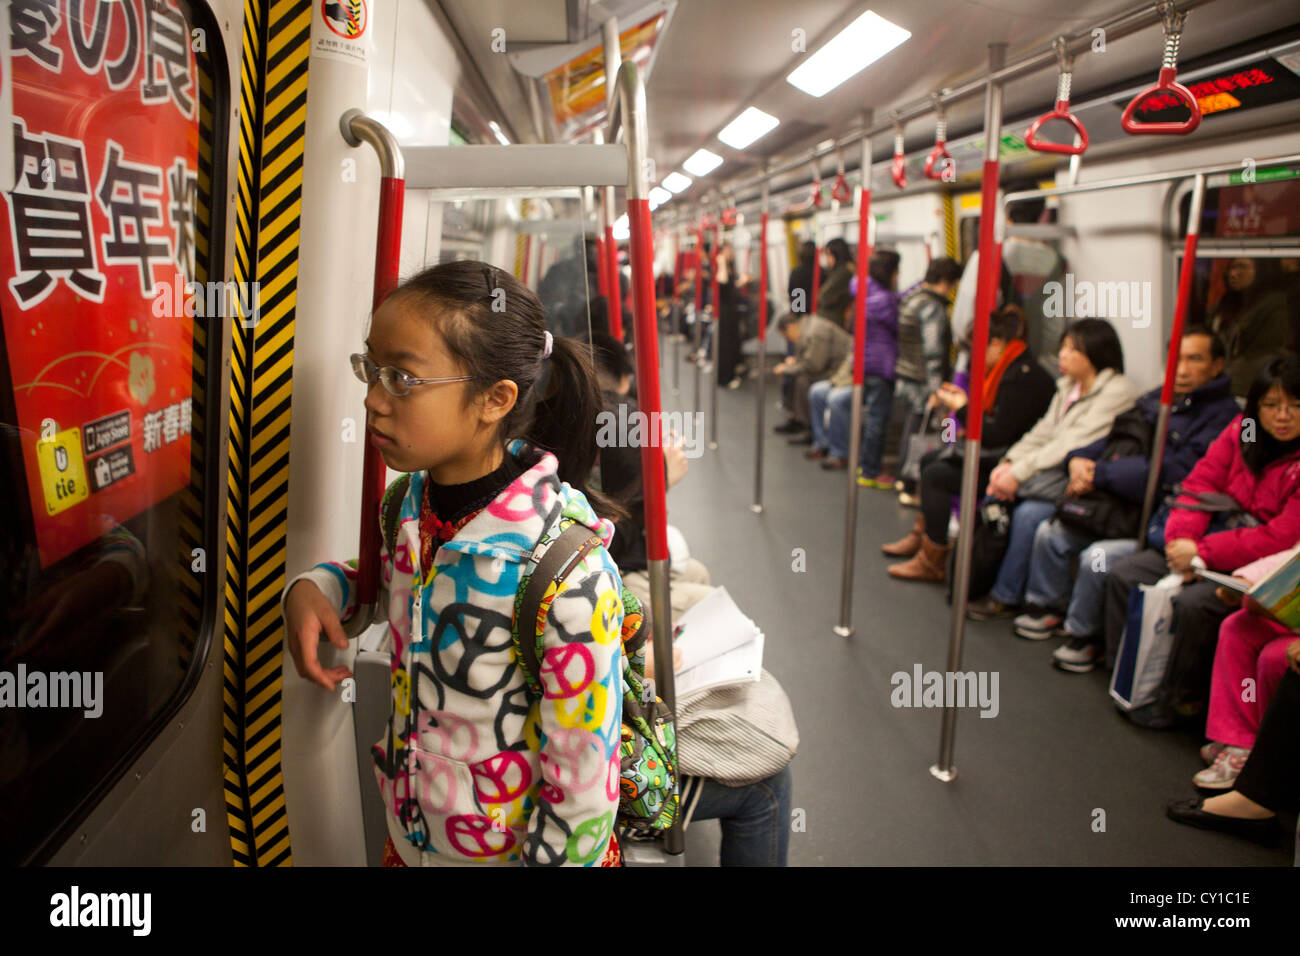 Hongkong subway system Stock Photo